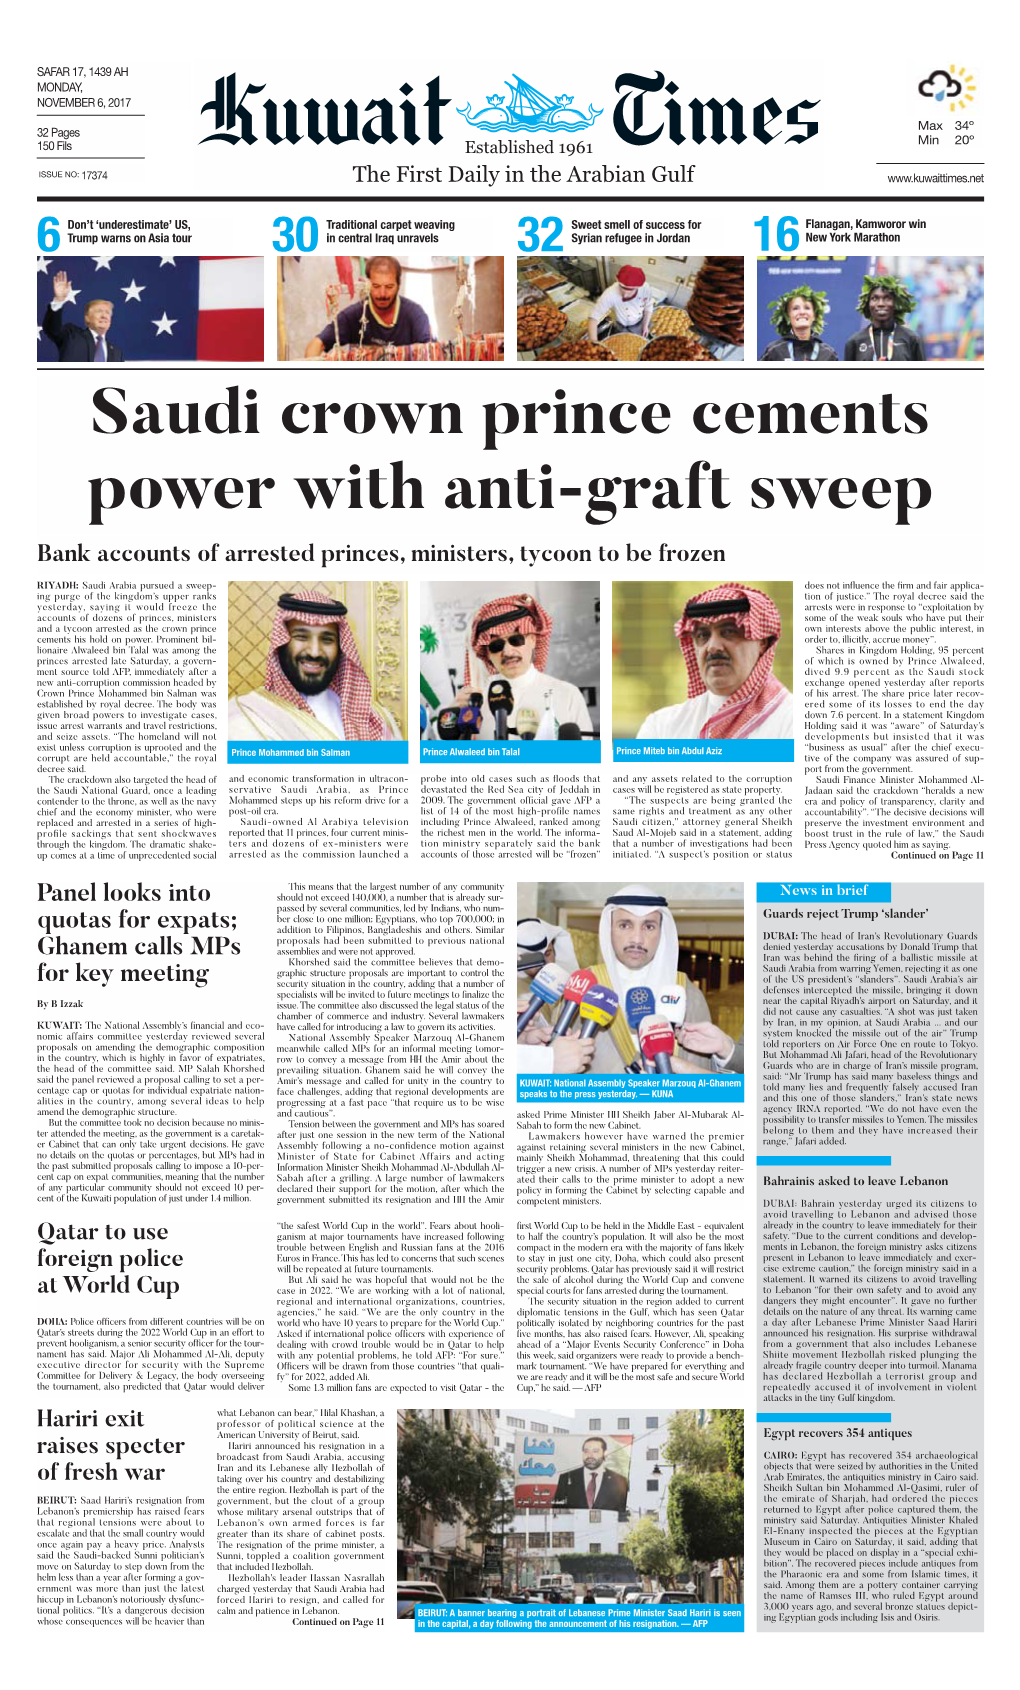 Kuwait Times 6-11-2017.Qxp Layout 1